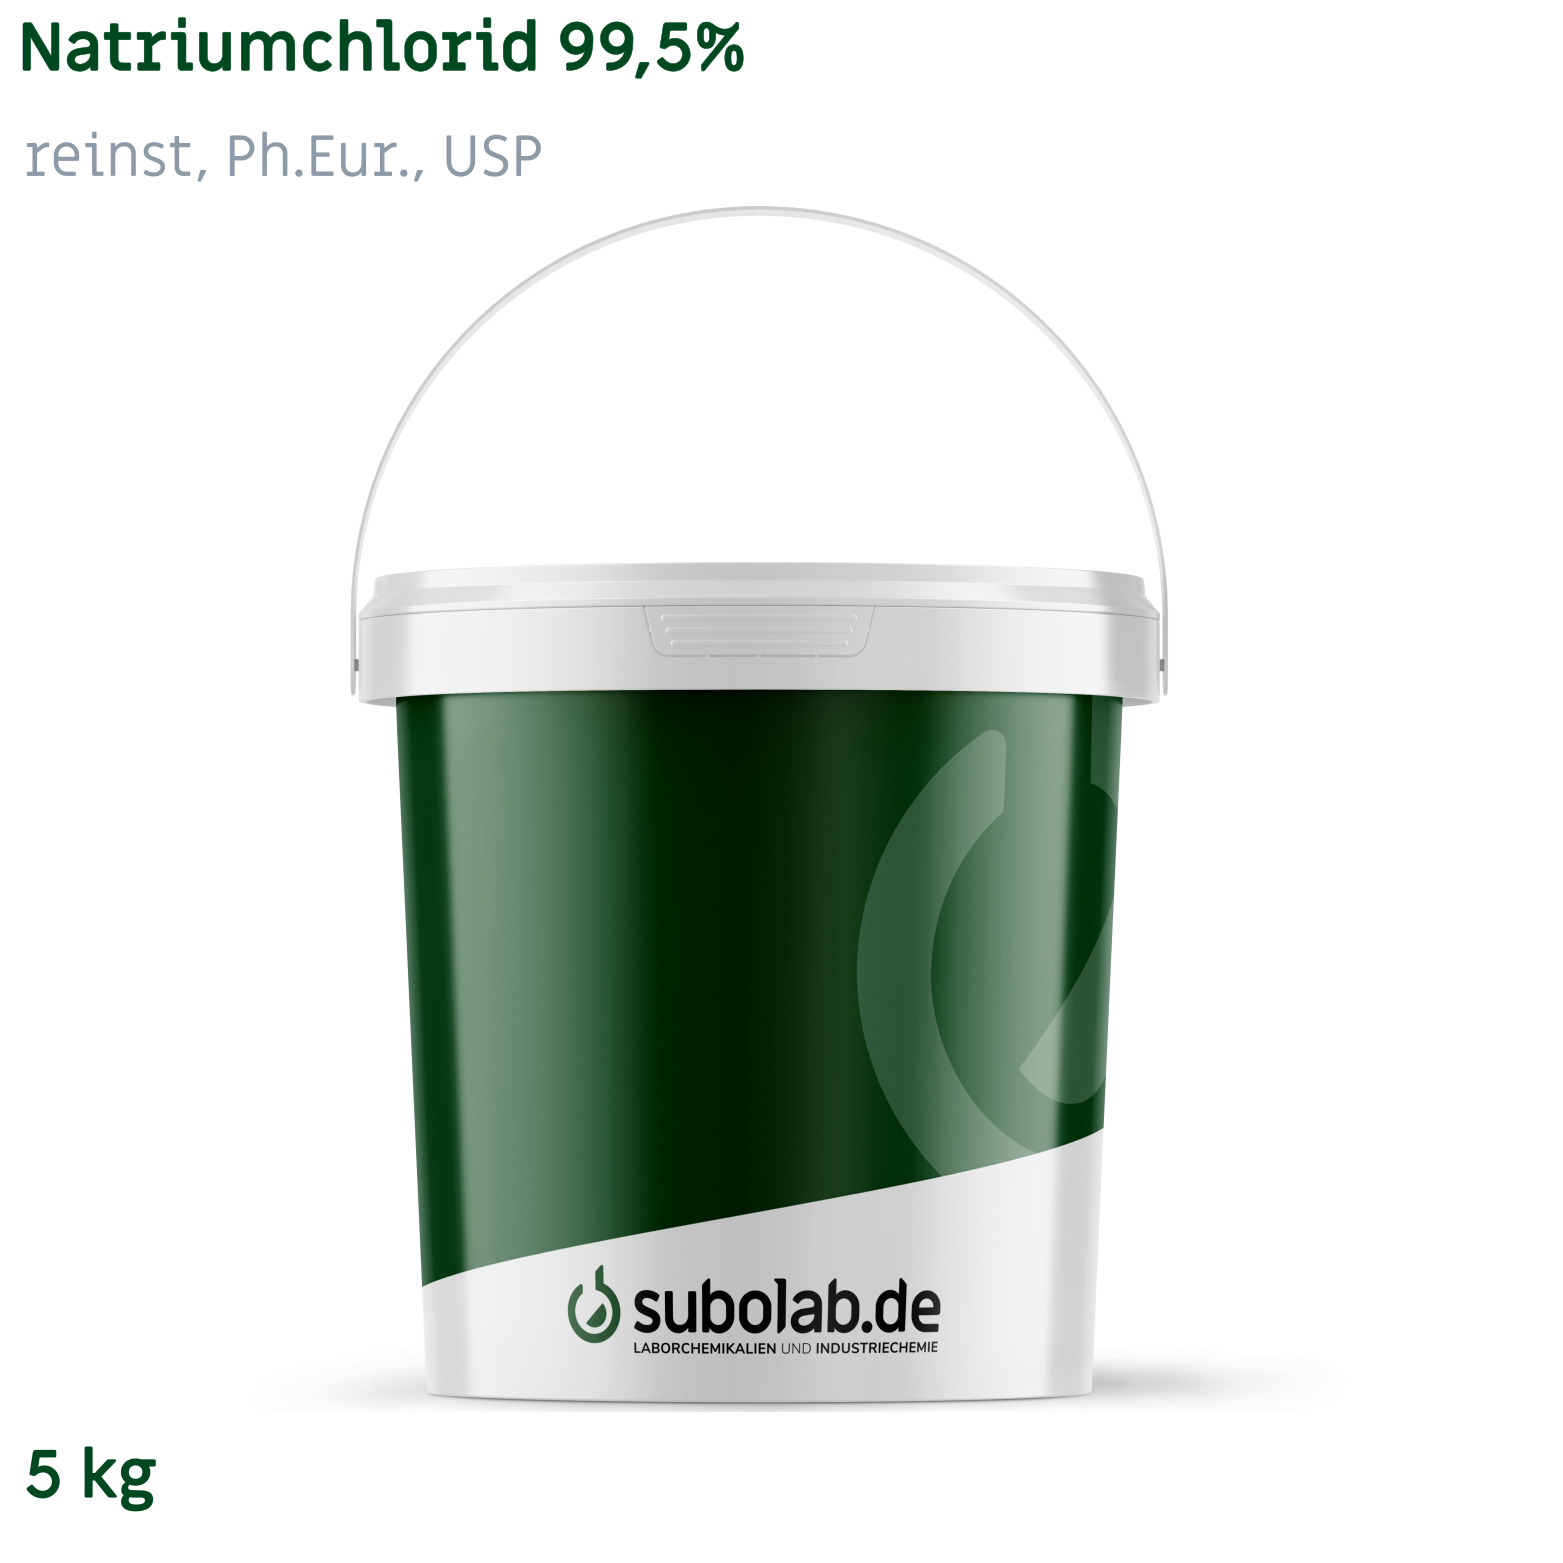 Bild von Natriumchlorid 99,5% reinst, Ph.Eur., USP (5 kg)